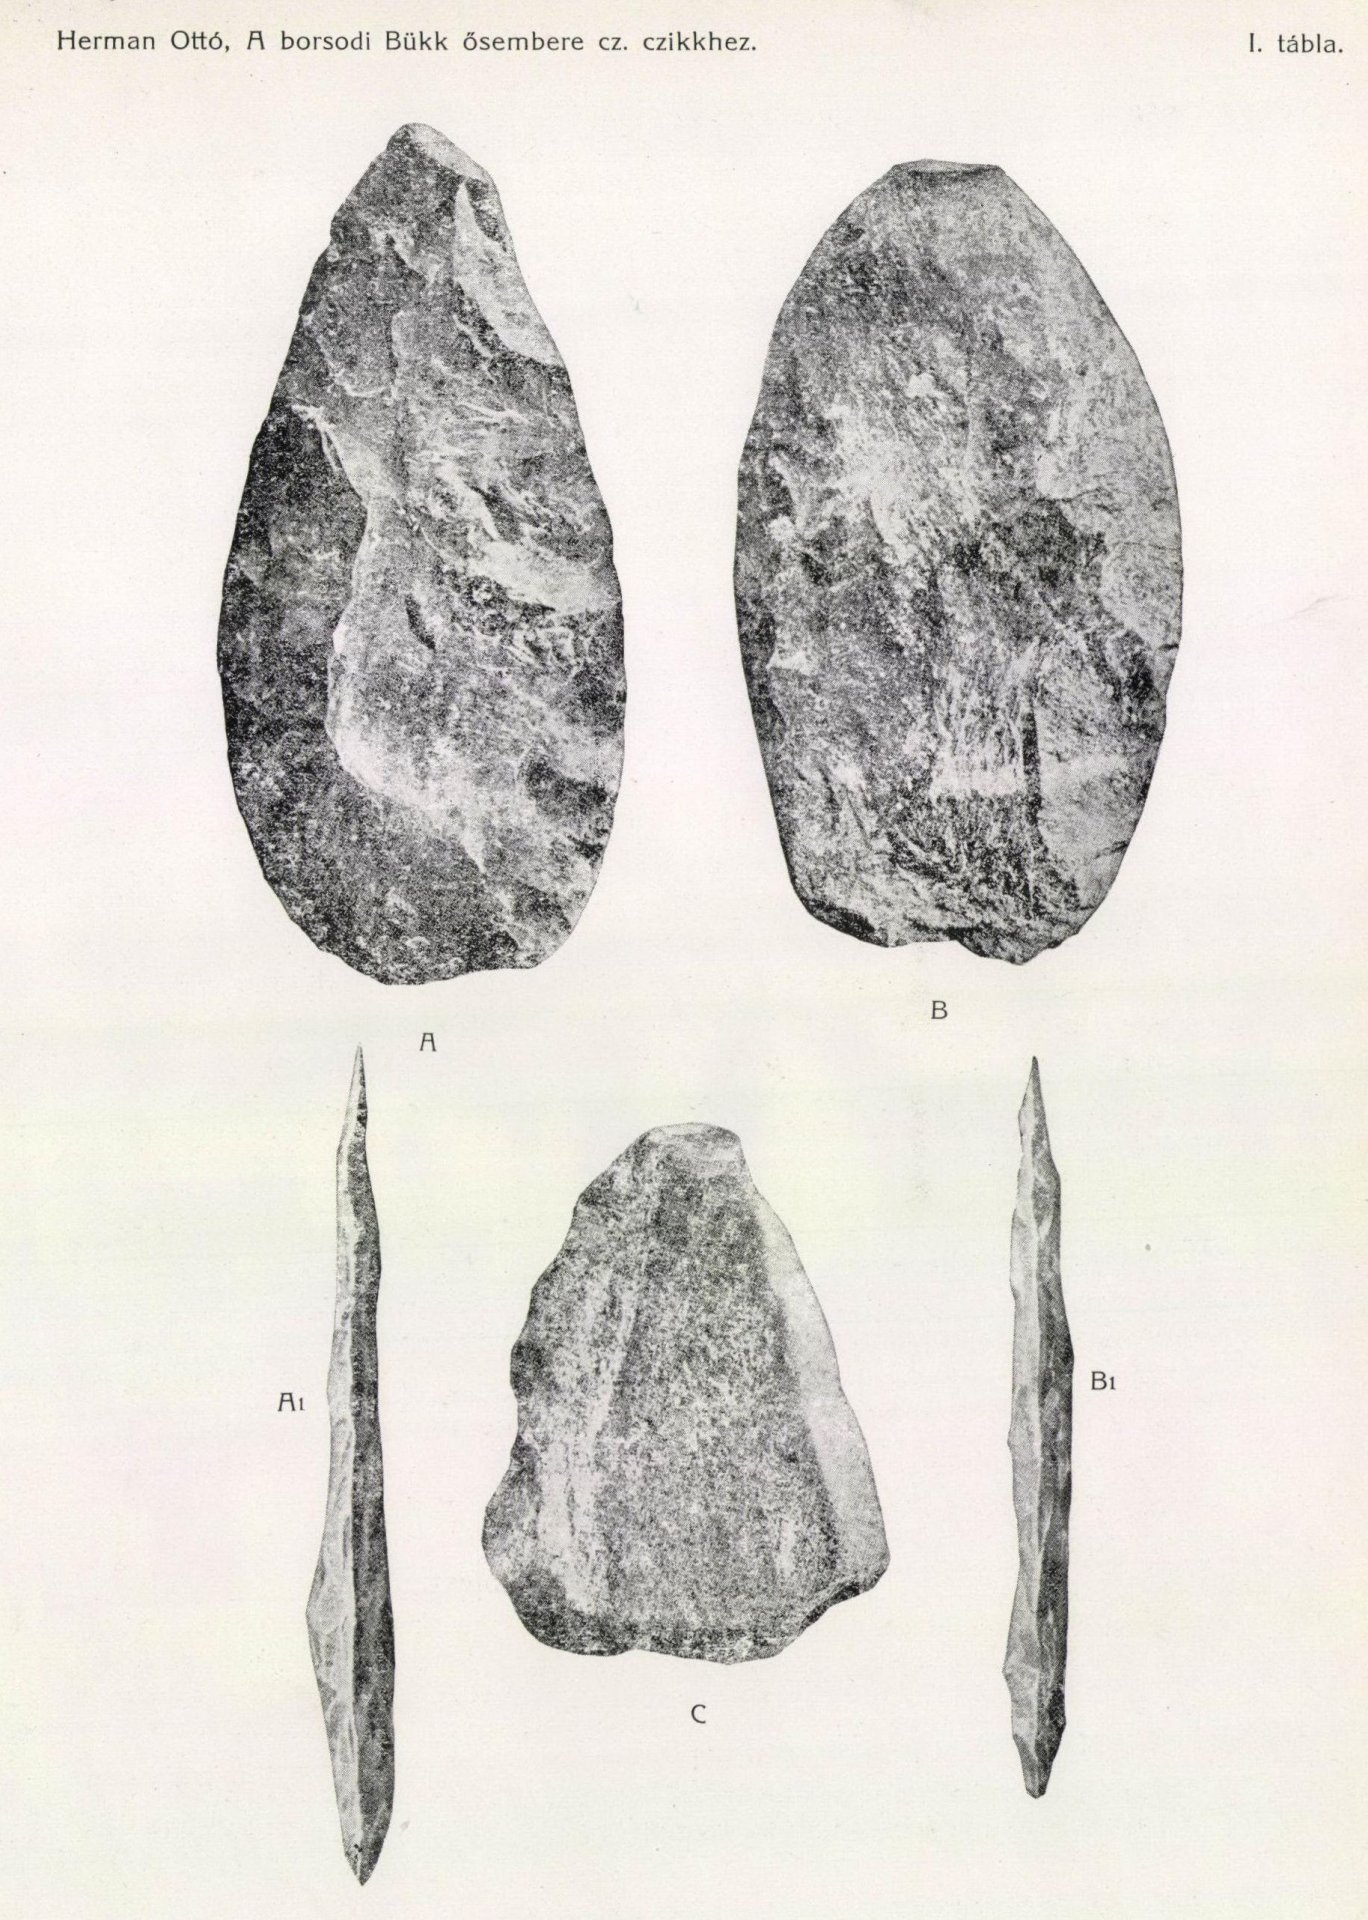 Kőeszközök, Szeleta-kultúra